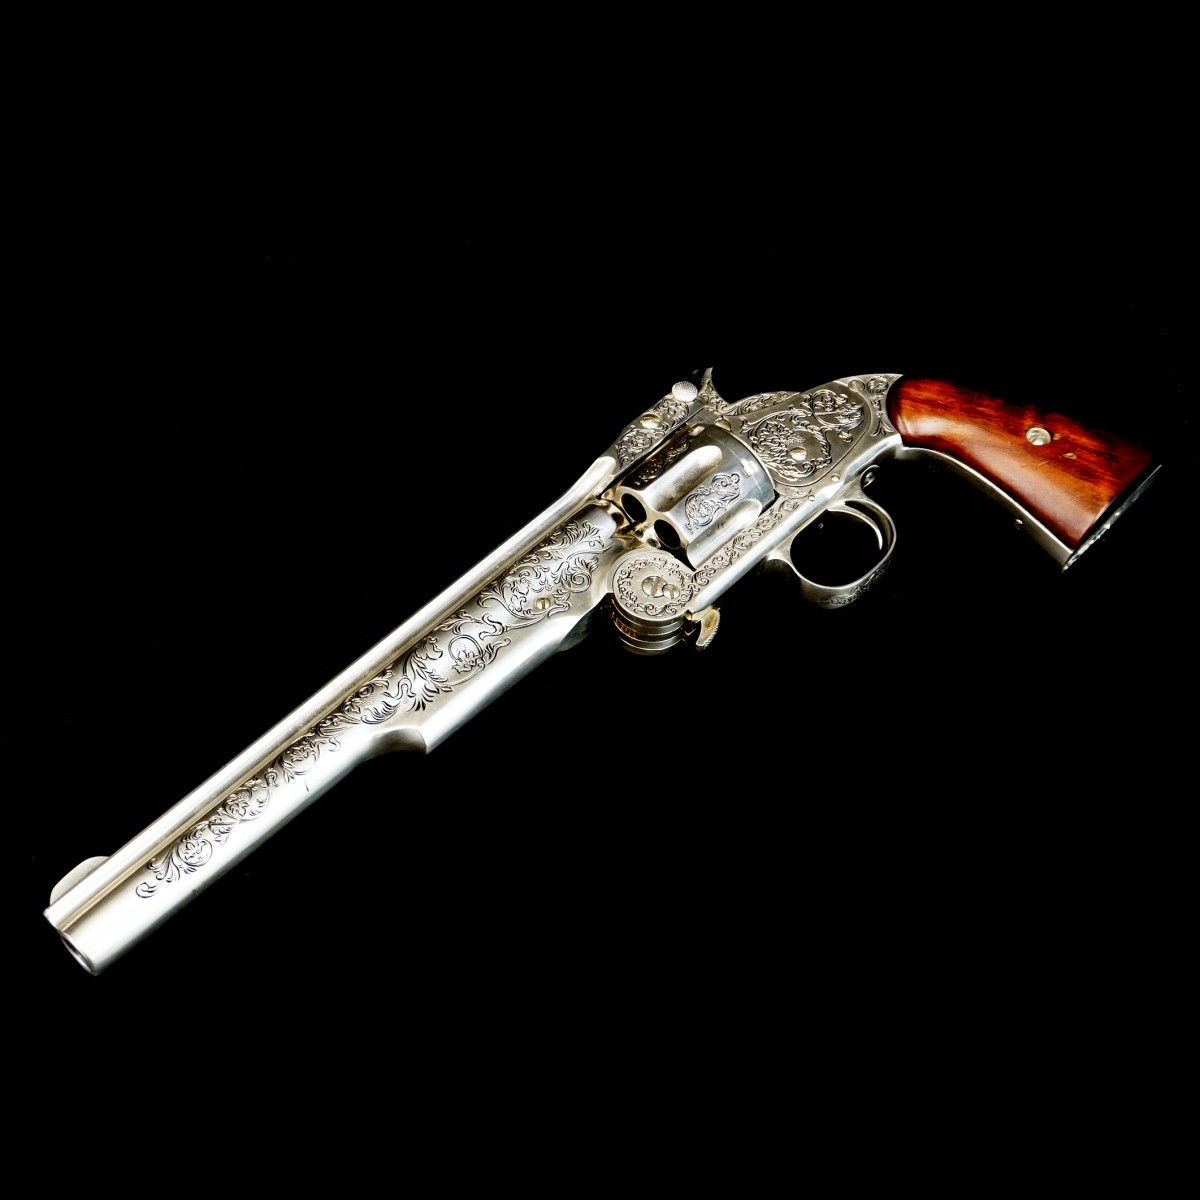 Replica Wyatt Earp .44 Revolver